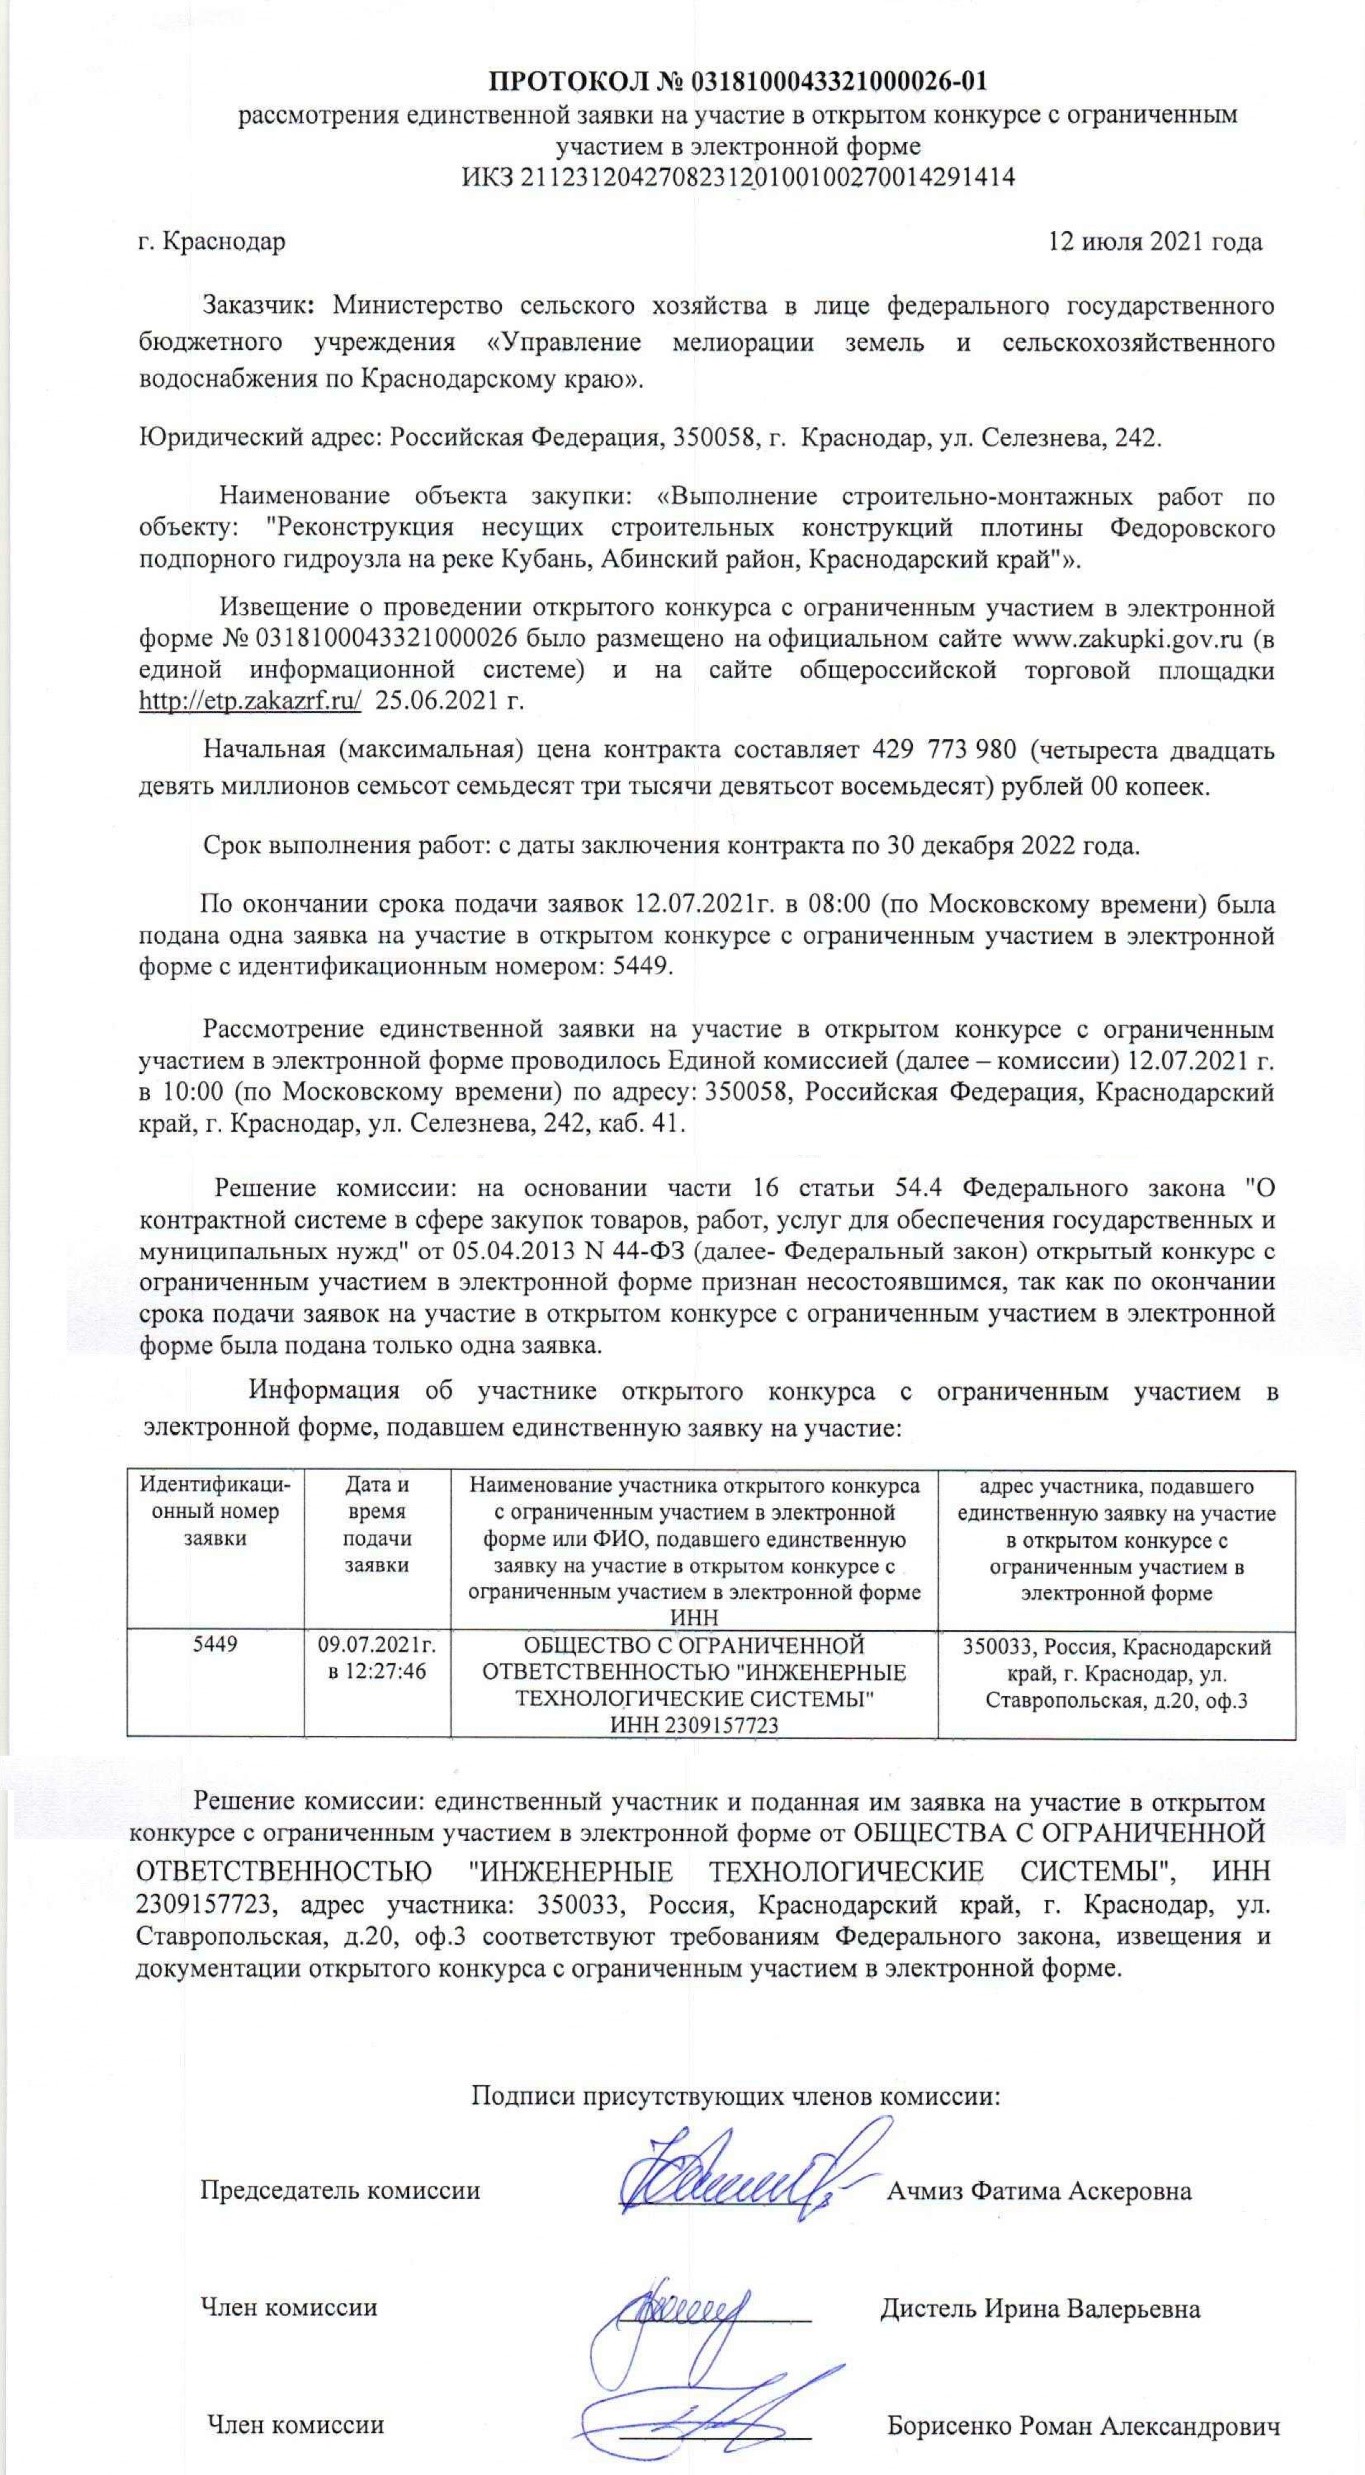 Кто понесет наказание за обрушение Федоровского гидроузла на Кубани?